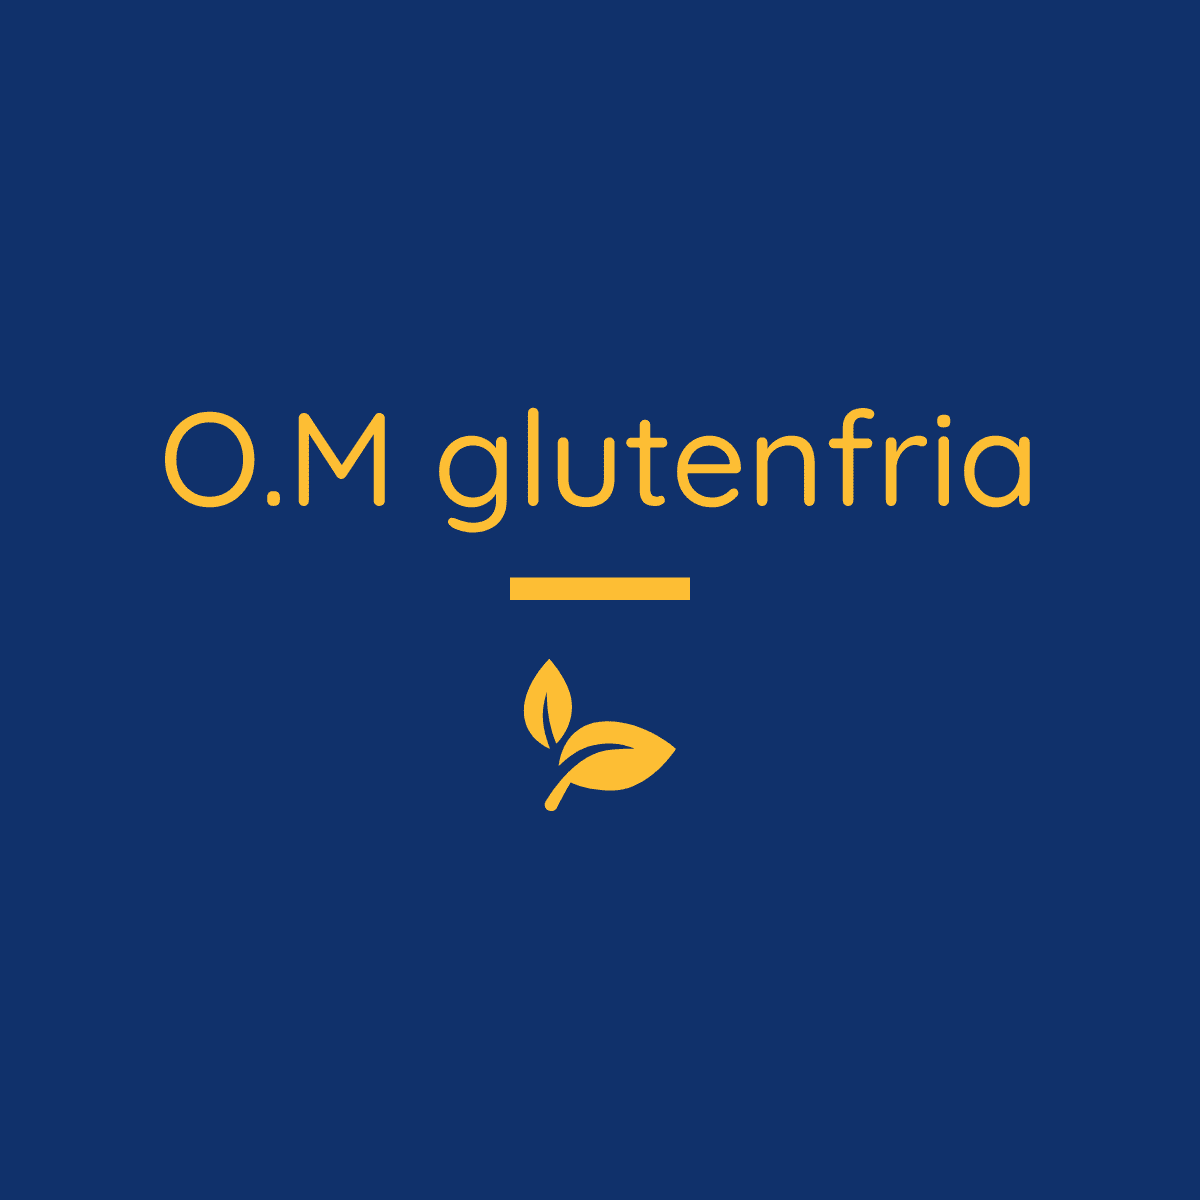 O.M glutenfria